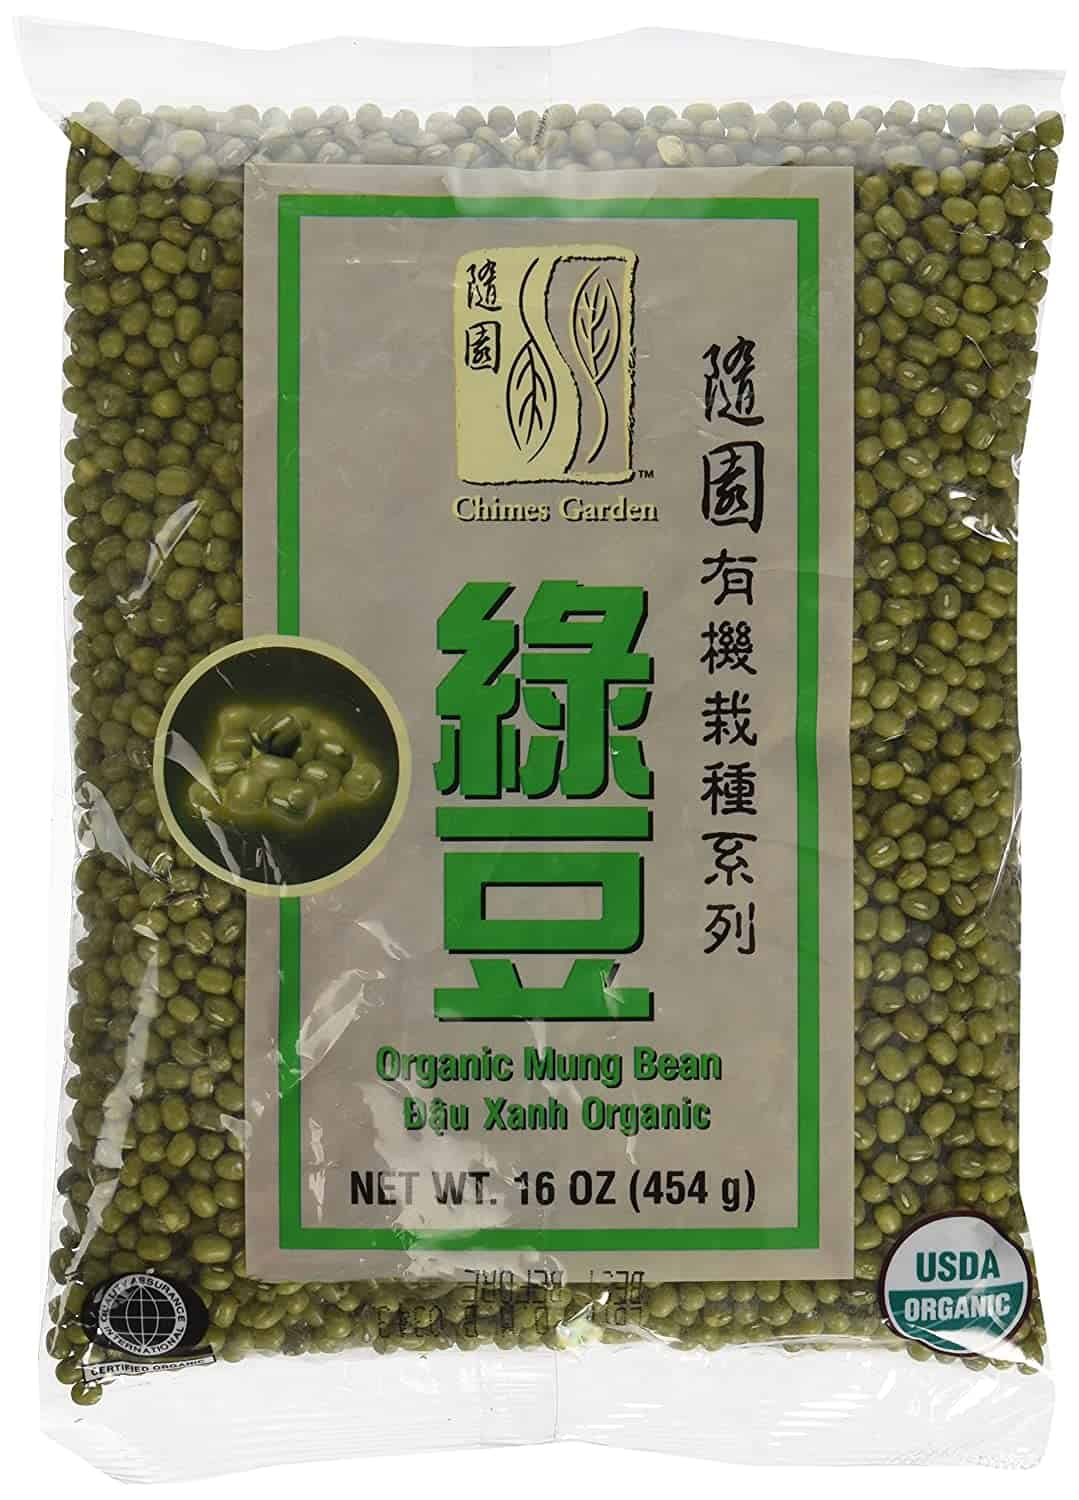 Molemo ka ho fetisisa oa linaoa tsa mung: Chimes Garden Organic Mung Beans